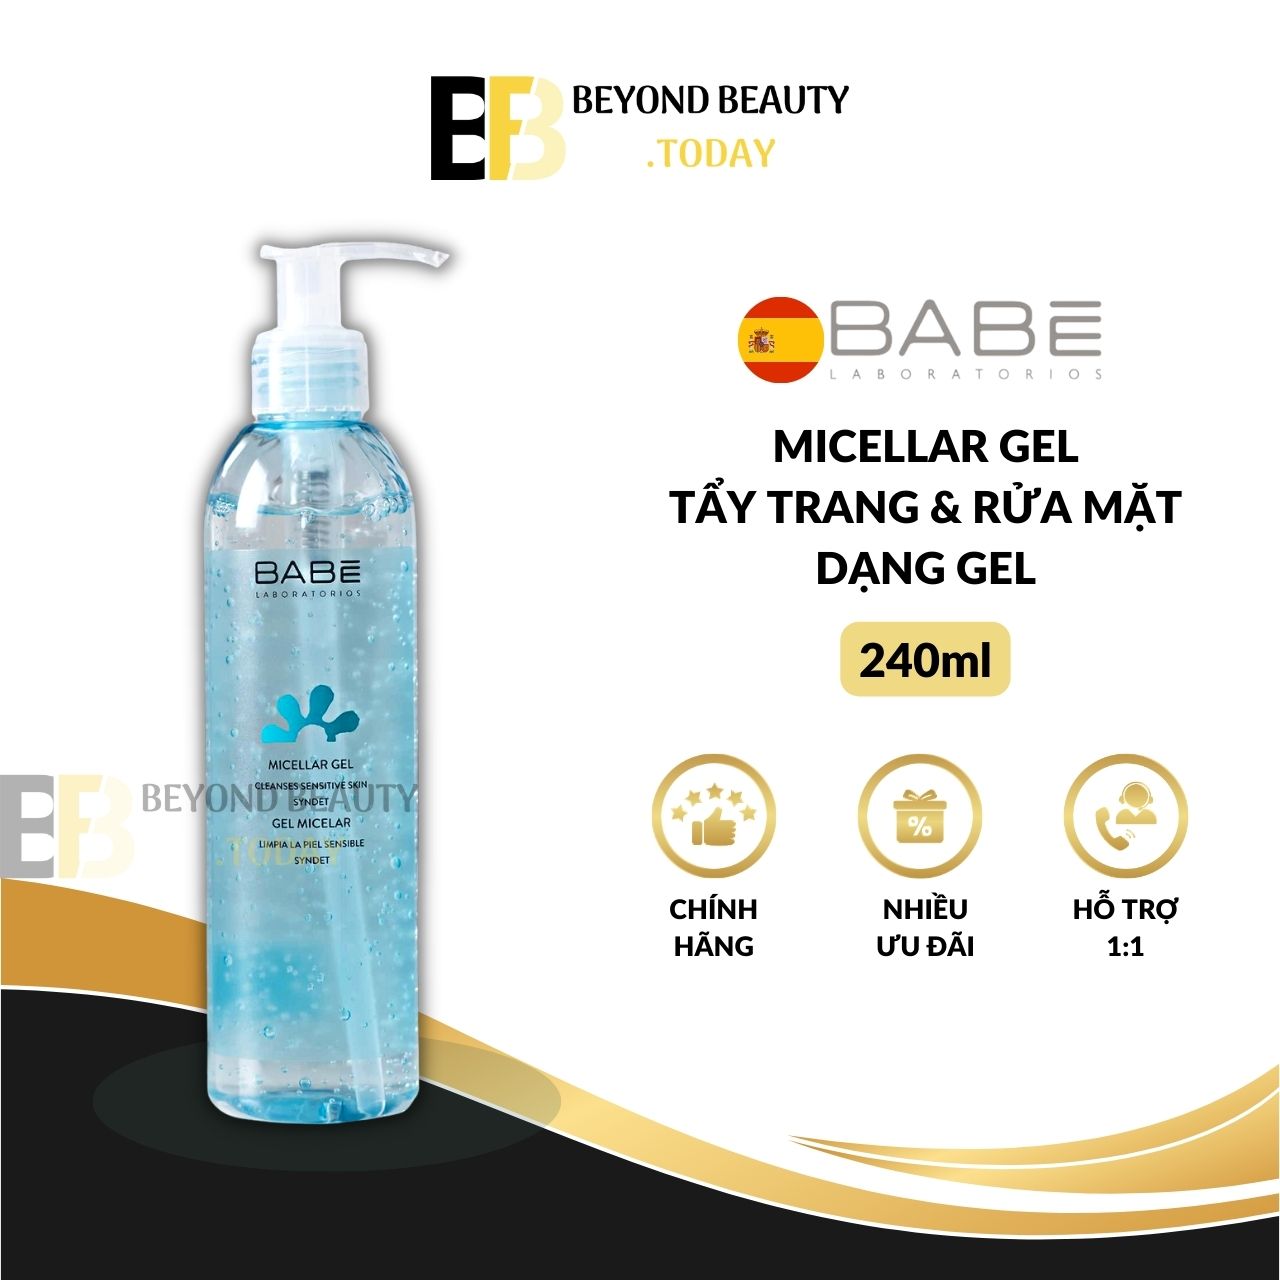 Gel Rửa Mặt và Tẩy Trang BABE Micellar Gel - Làm Sạch Dịu Nhẹ, Dùng Được Cho Da Nhạy Cảm | Beyond Beauty